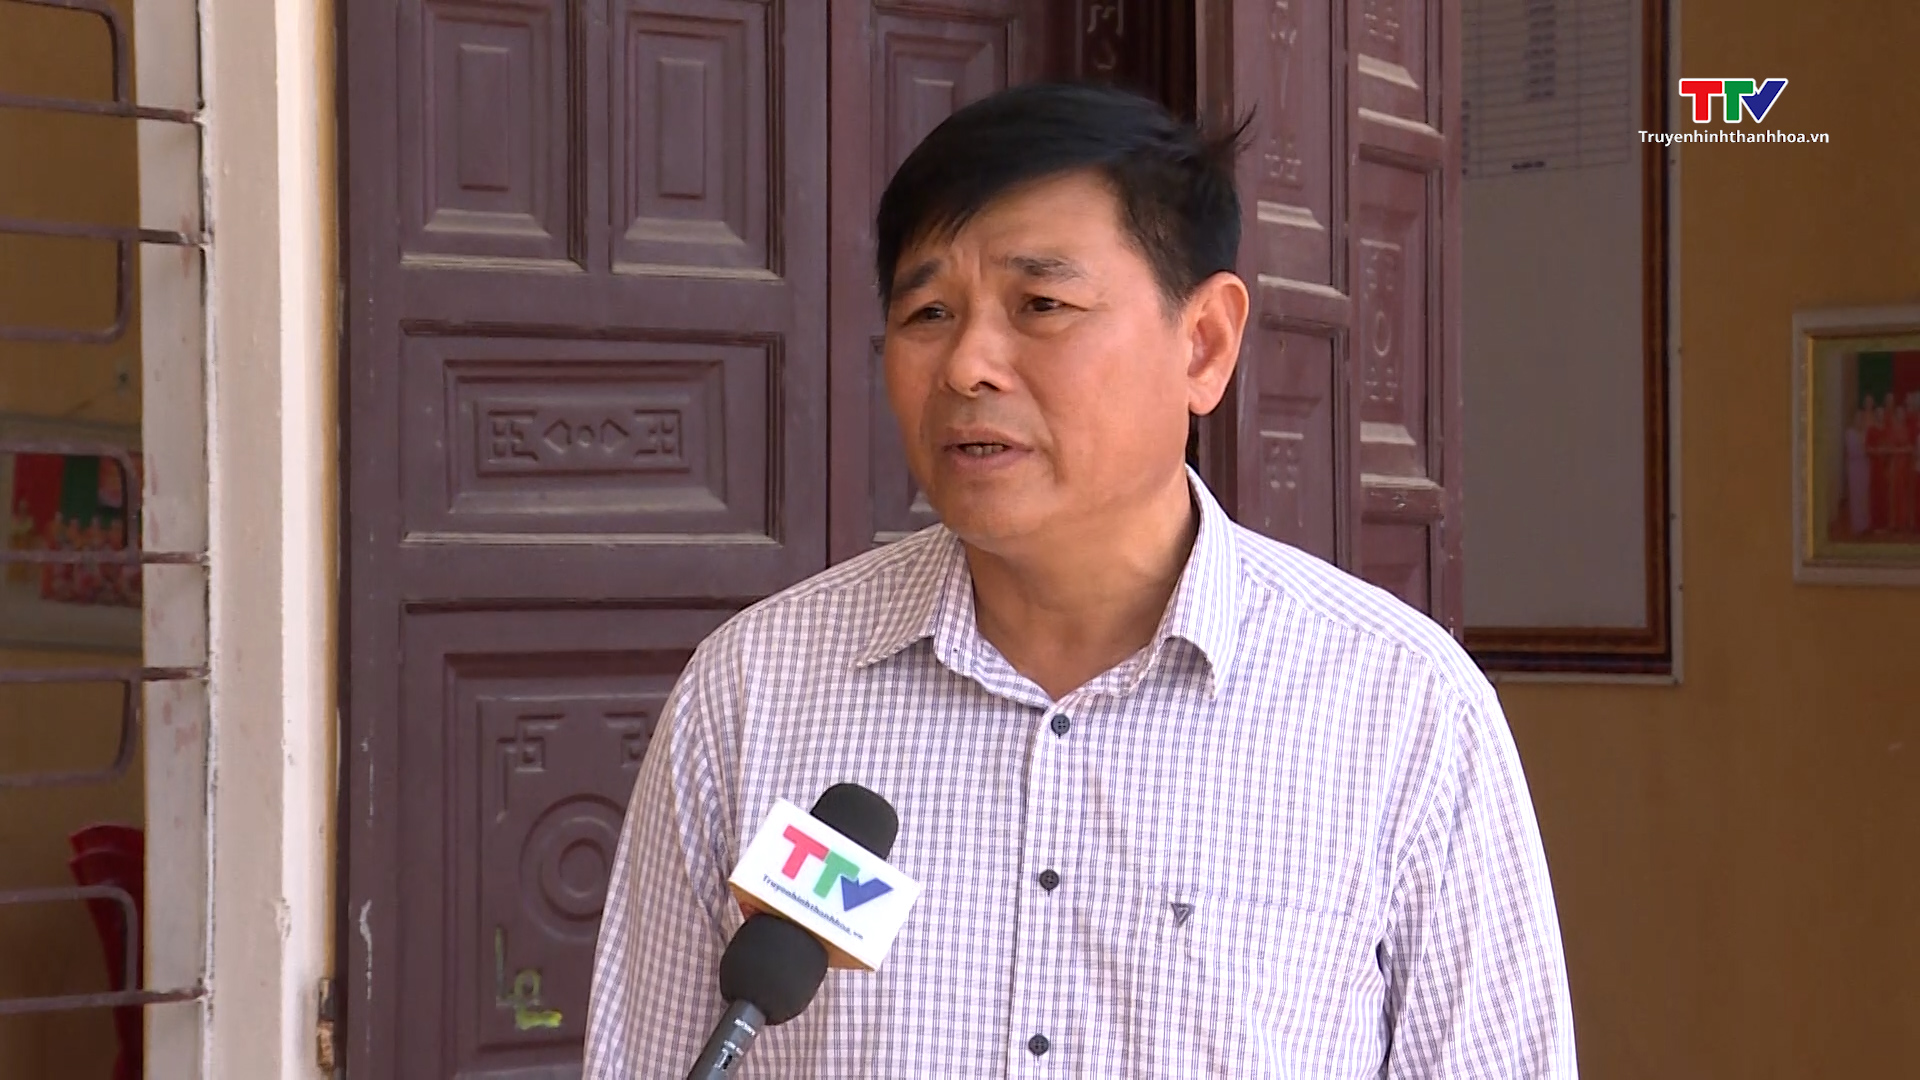 Huyện Triệu Sơn tăng cường công tác thanh tra, giải quyết khiếu nại, tố cáo, ổn định tình hình  - Ảnh 4.